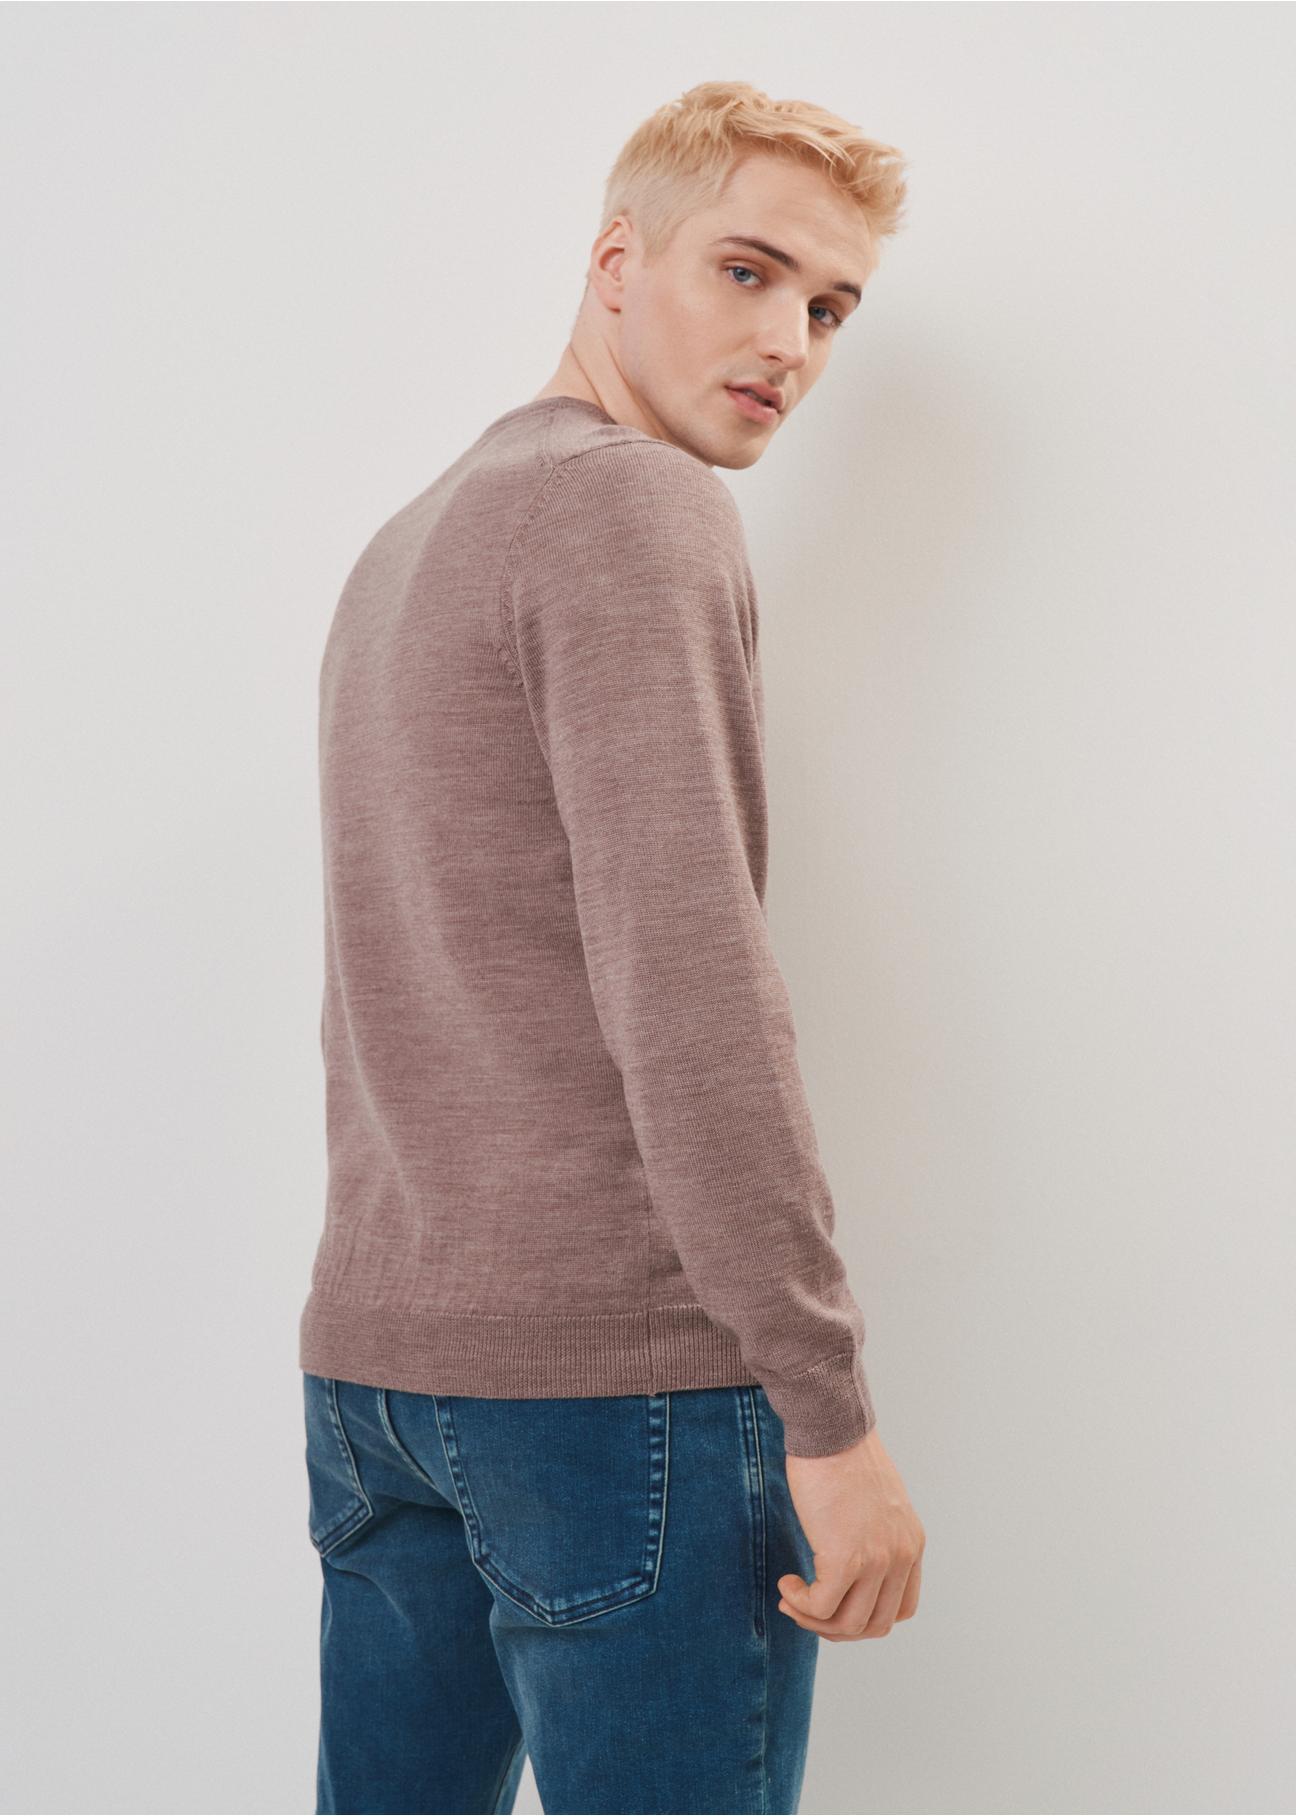 Beżowy wełniany sweter męski SWEMT-0139-81(Z23)